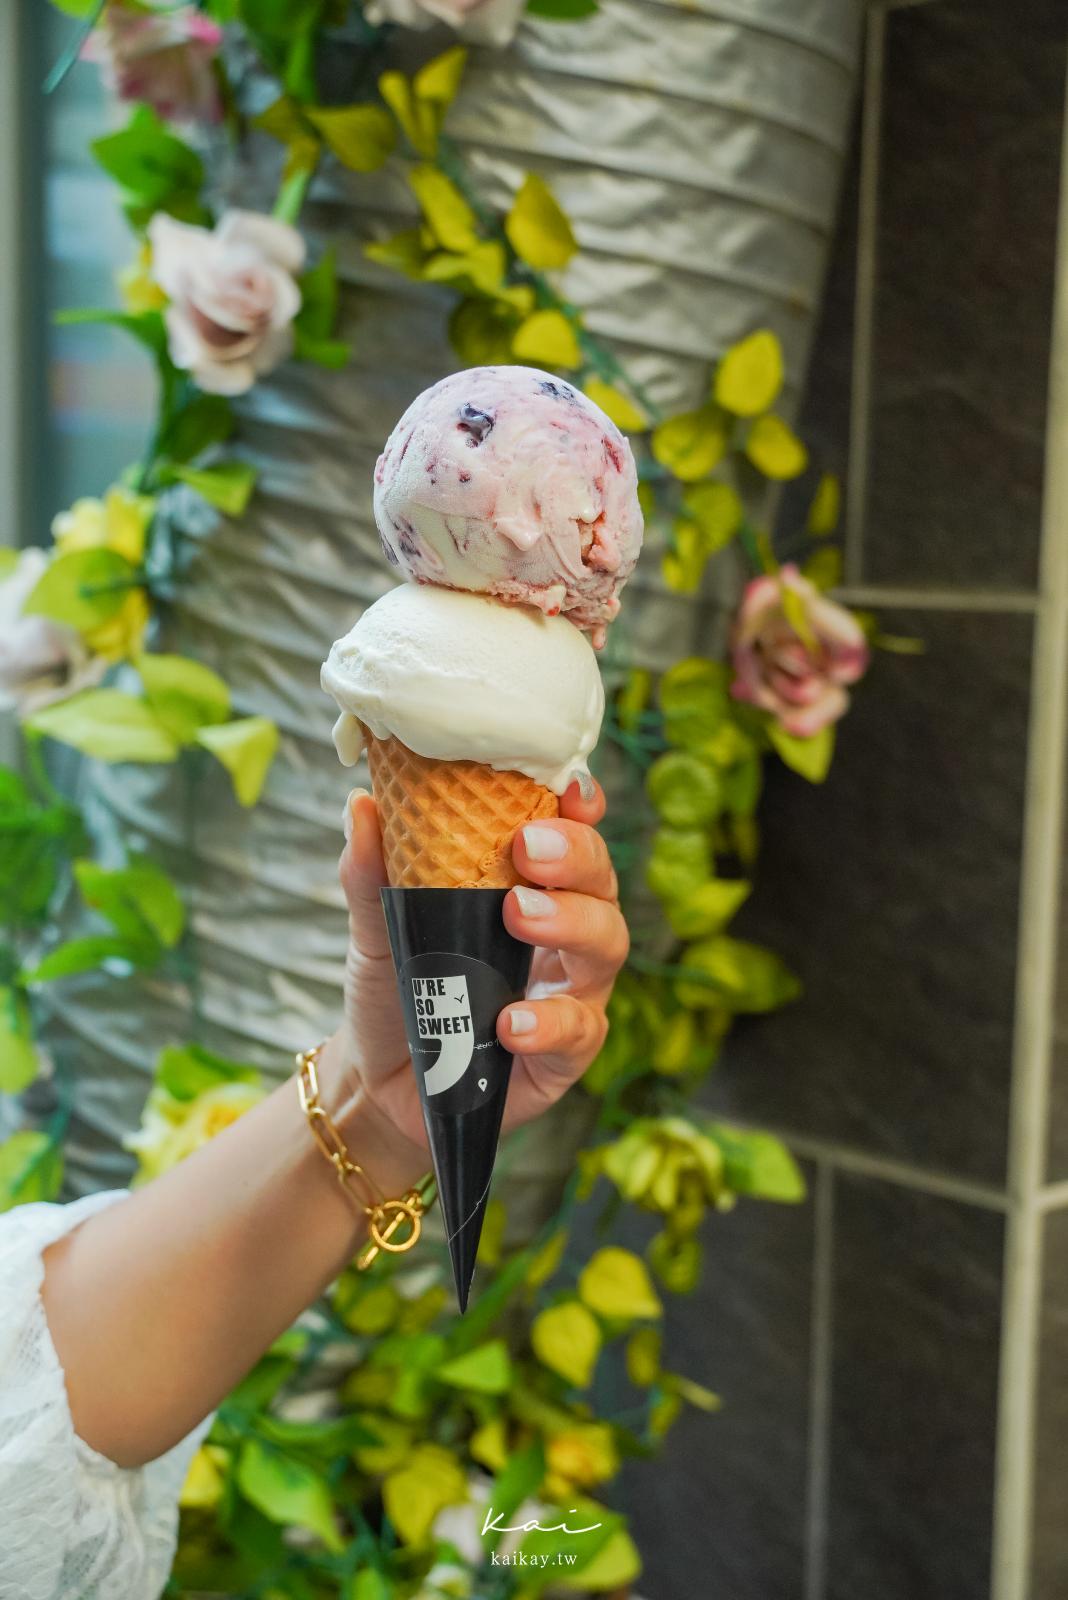 ☆【澎湖美食】馬公必吃冰品甜點：憲作Gelato冰淇淋。每日現作義式冰淇淋至少7種口味